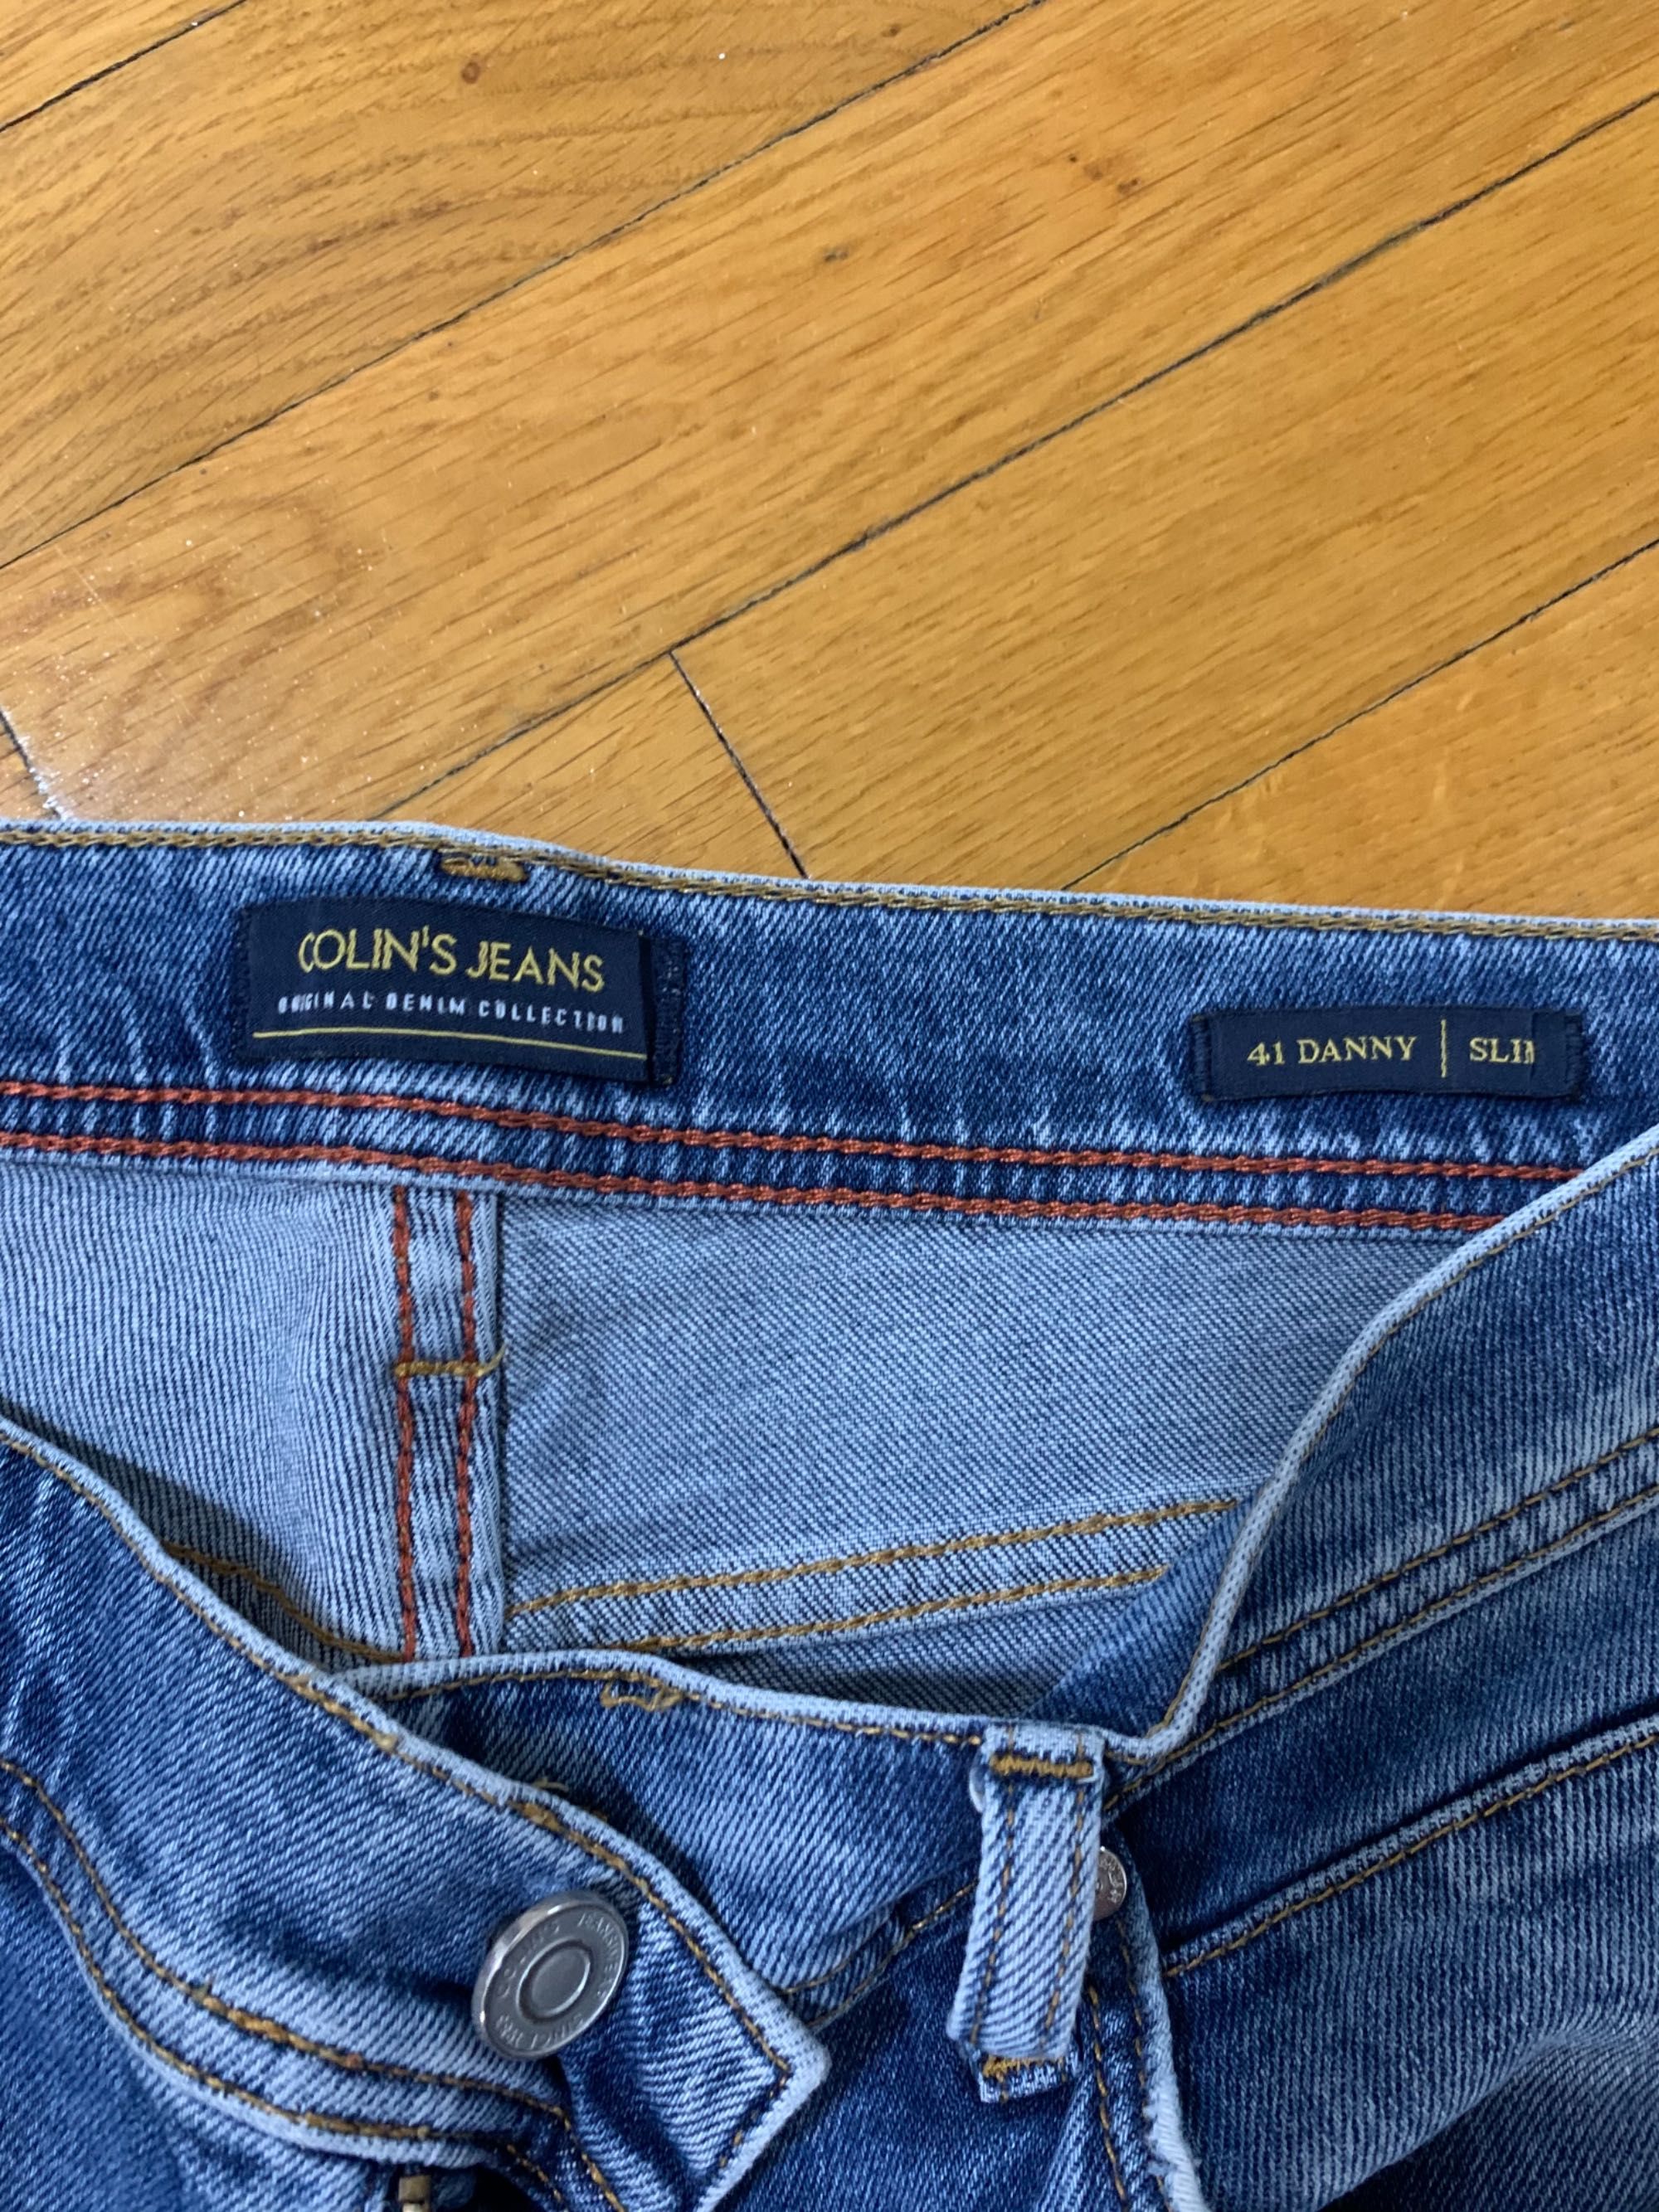 Джинсы Colin’s (зауженные), джинсы серые и синие цена за 2 шт